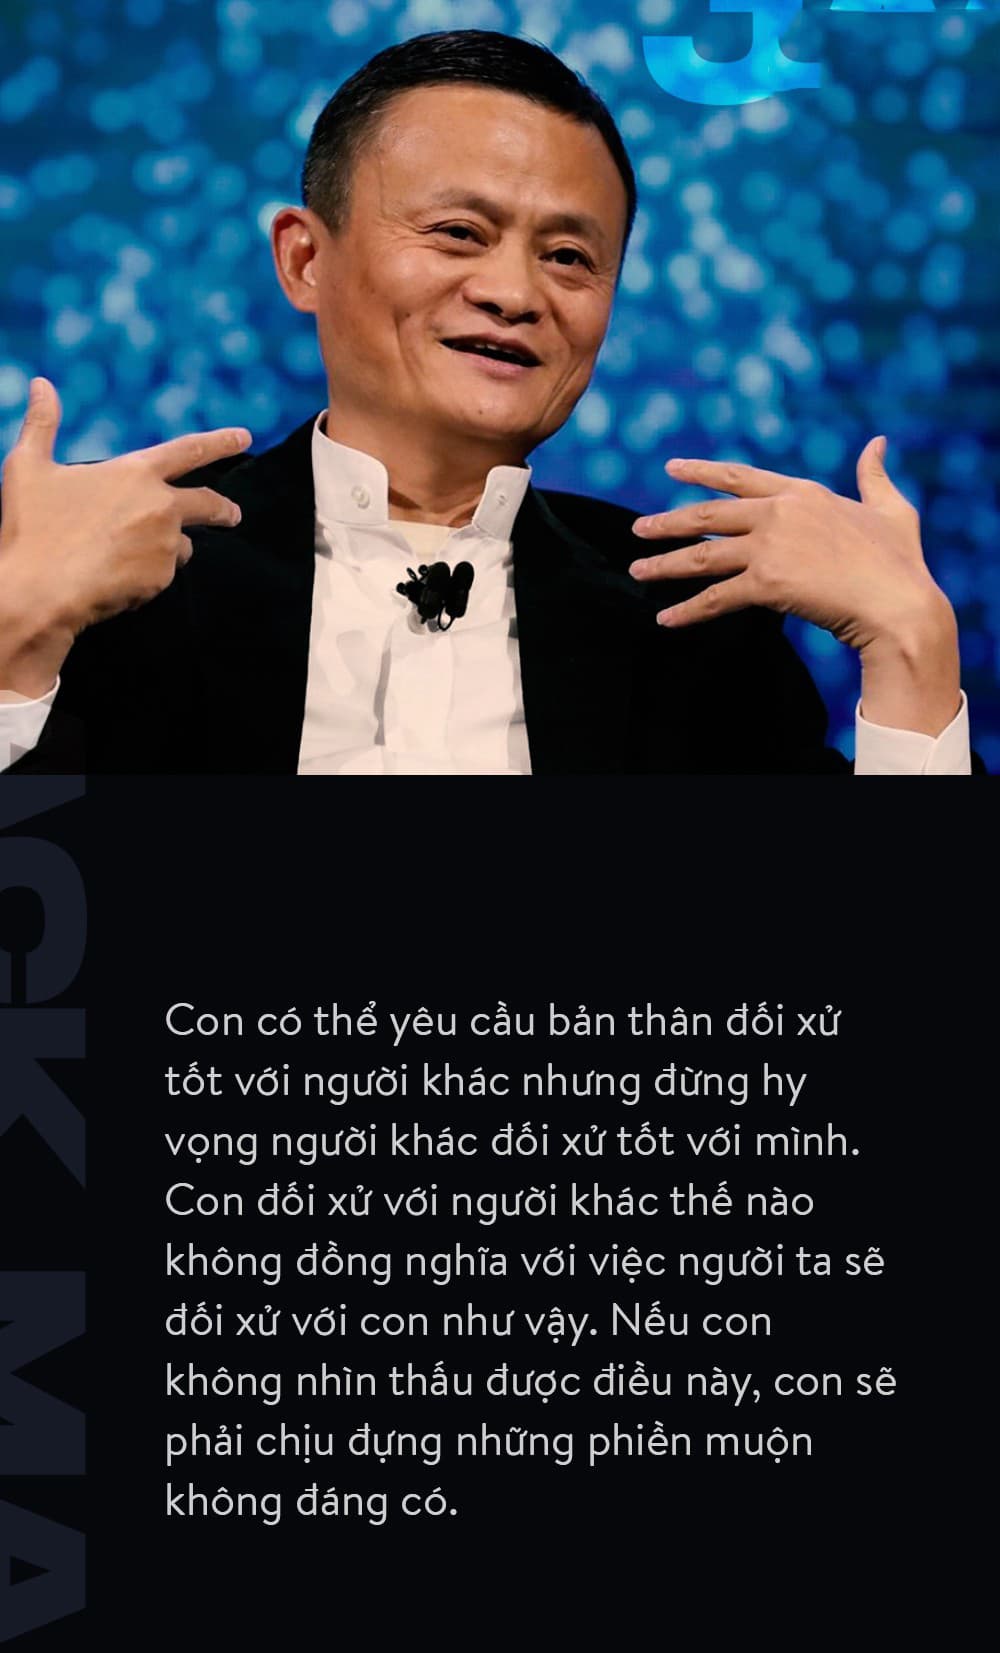 9 điều đáng giá ngàn vàng của tỉ phú Jack Ma dạy con, cha mẹ càng đọc càng thấy tâm đắc